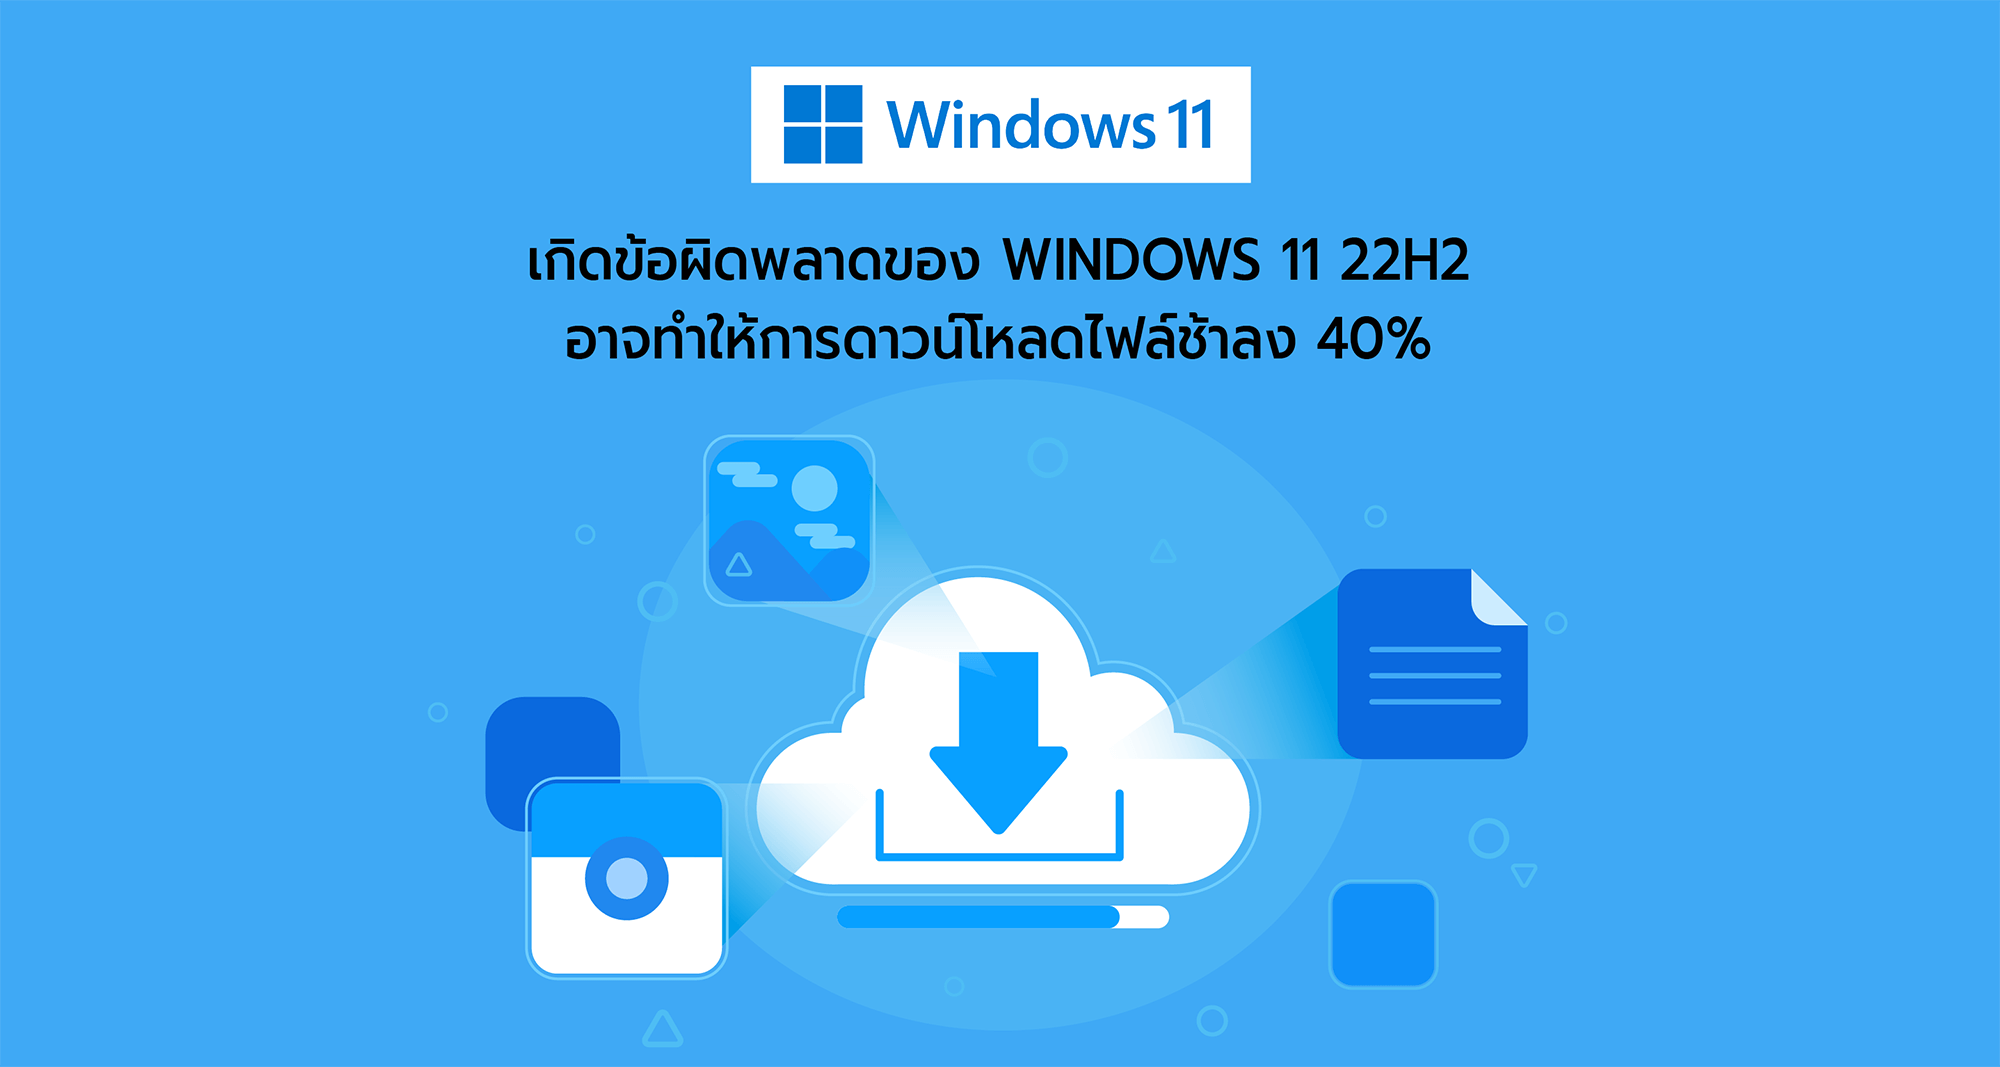 เกิดข้อผิดพลาดของ Windows 11 22H2 อาจทำให้การดาวน์โหลดไฟล์ช้าลง 40%